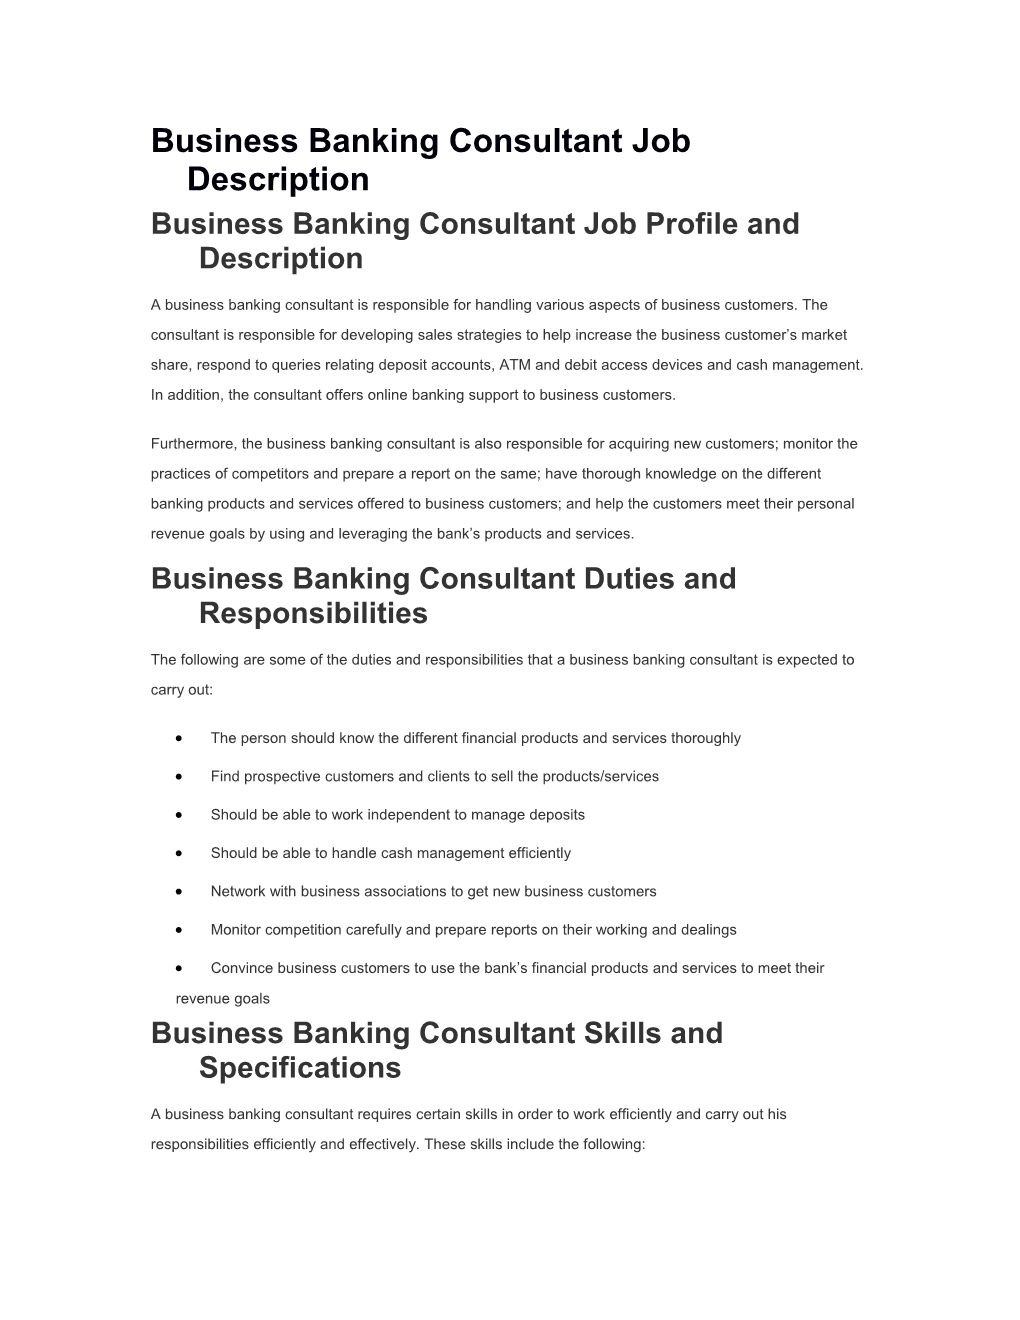 Business Banking Consultant Job Description